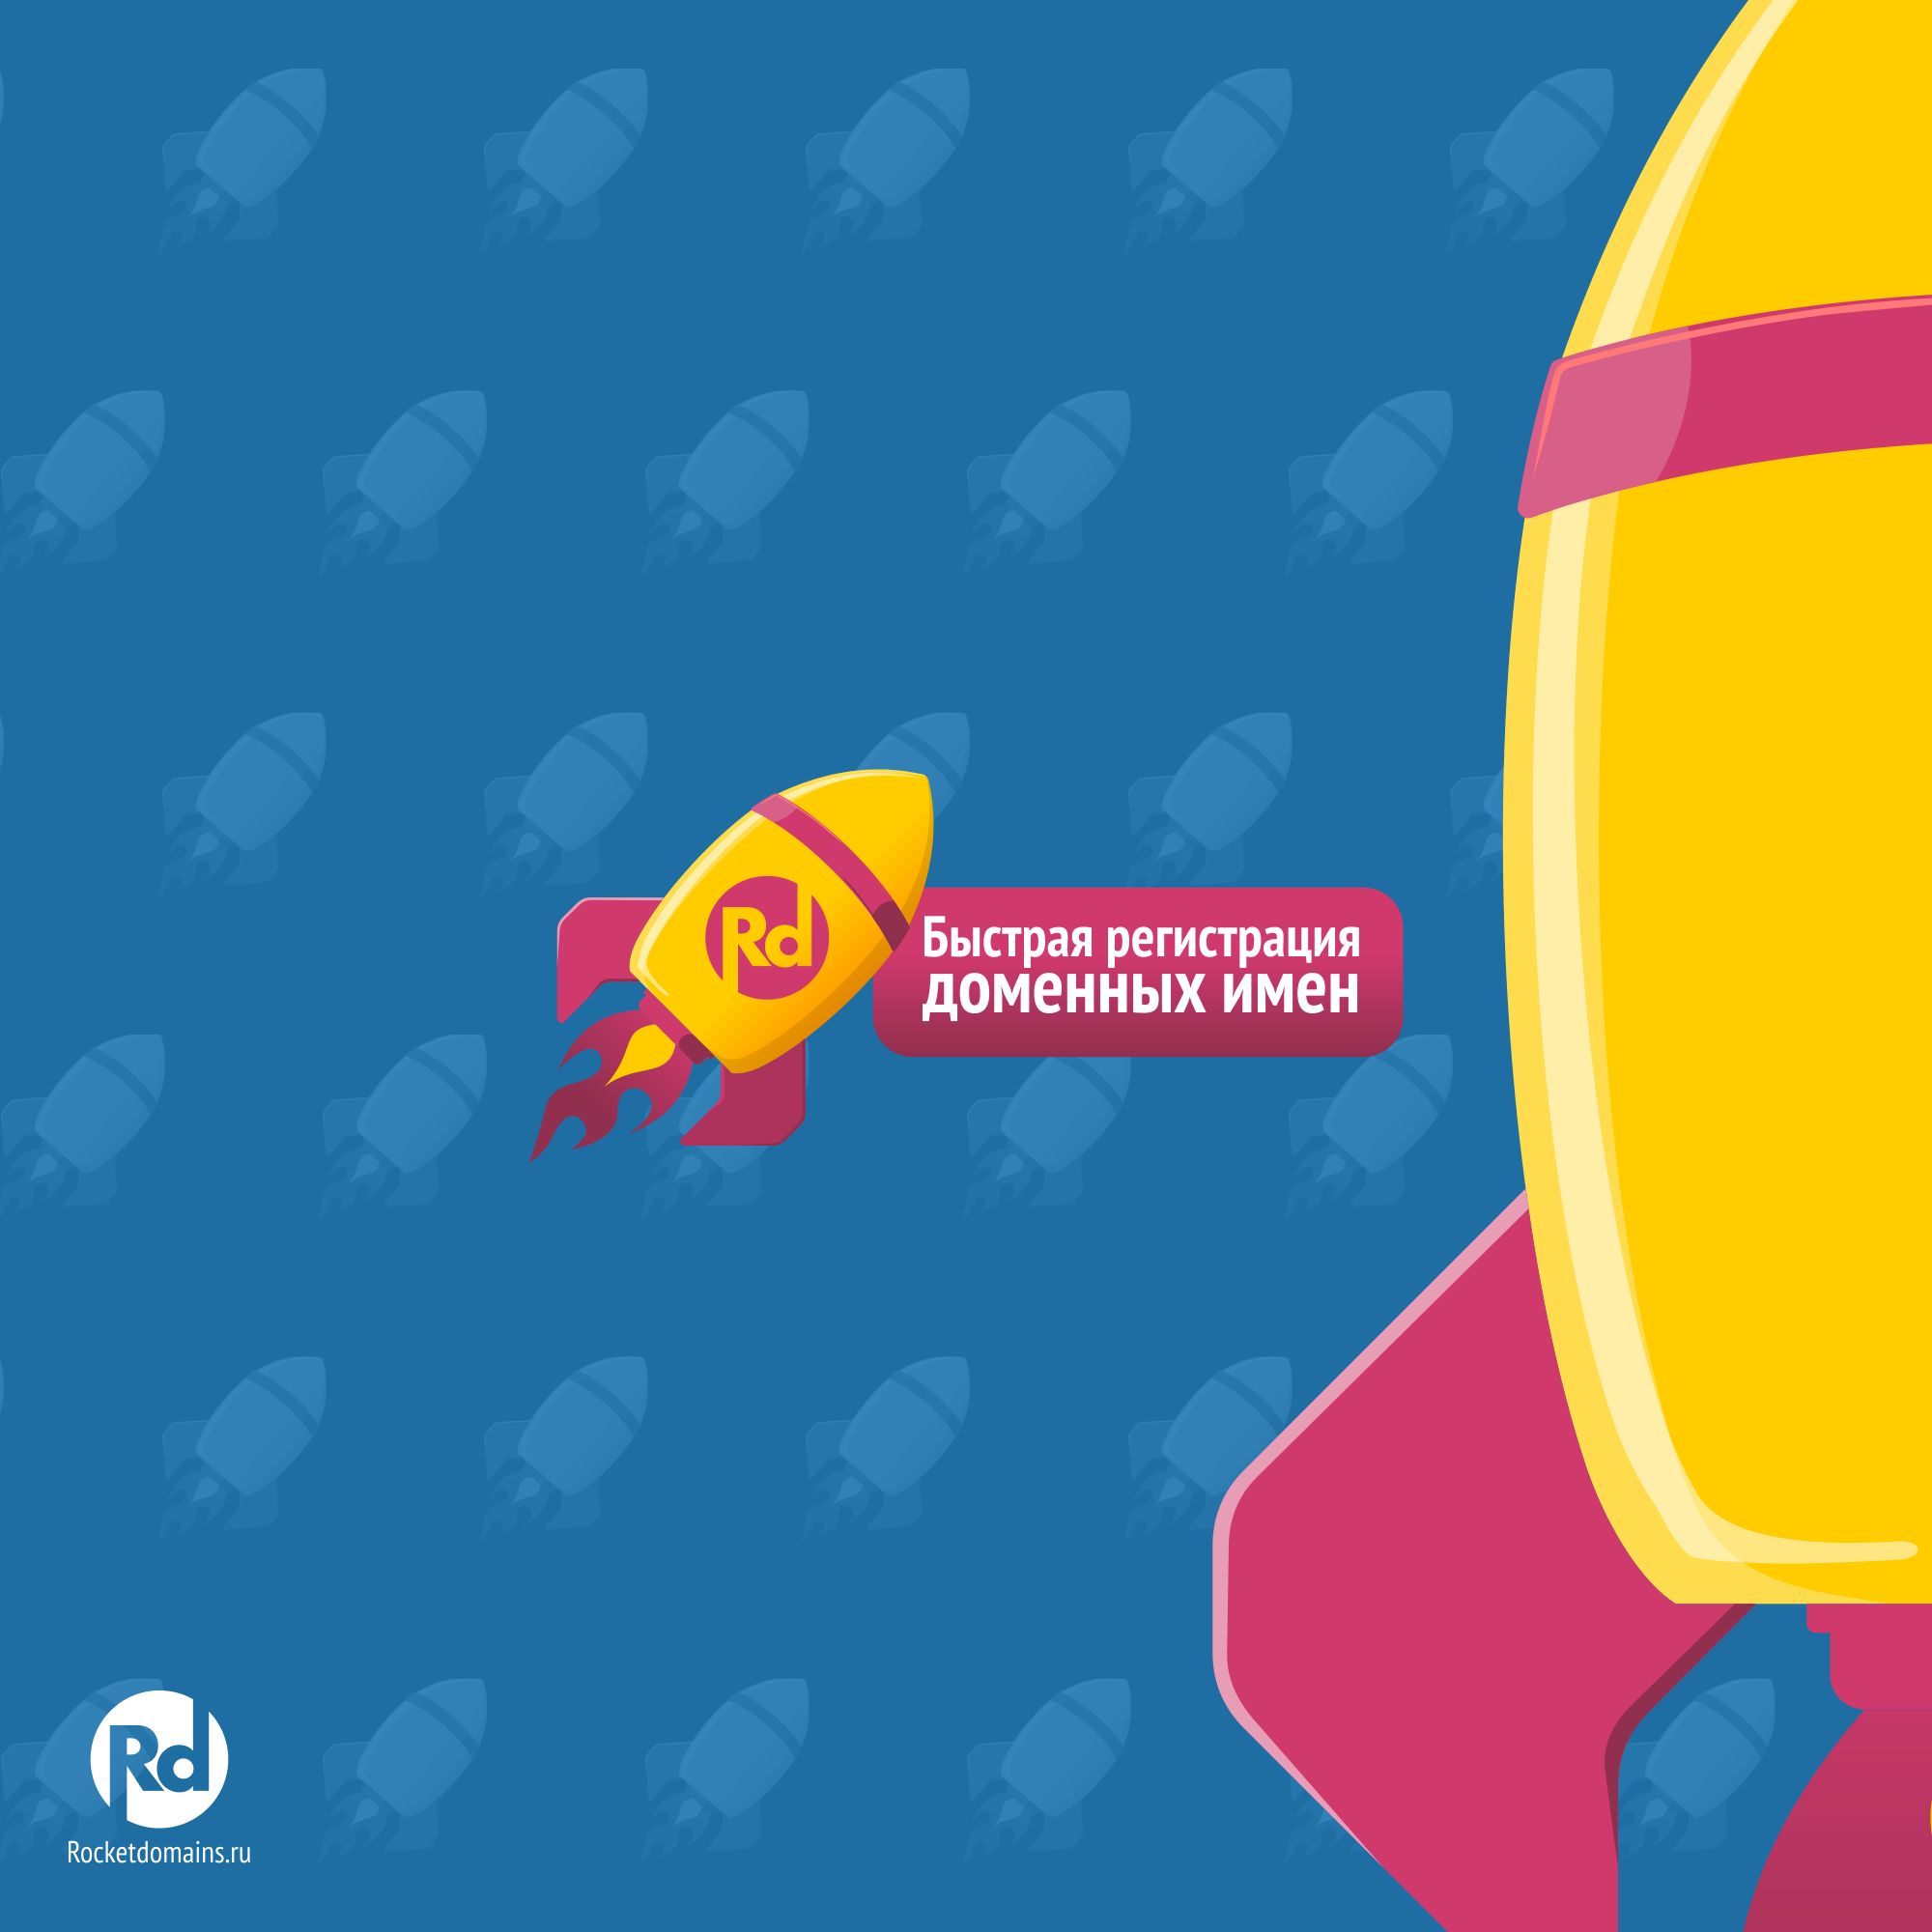 Логотип для регистратора RocketDomains.ru - дизайнер bitart